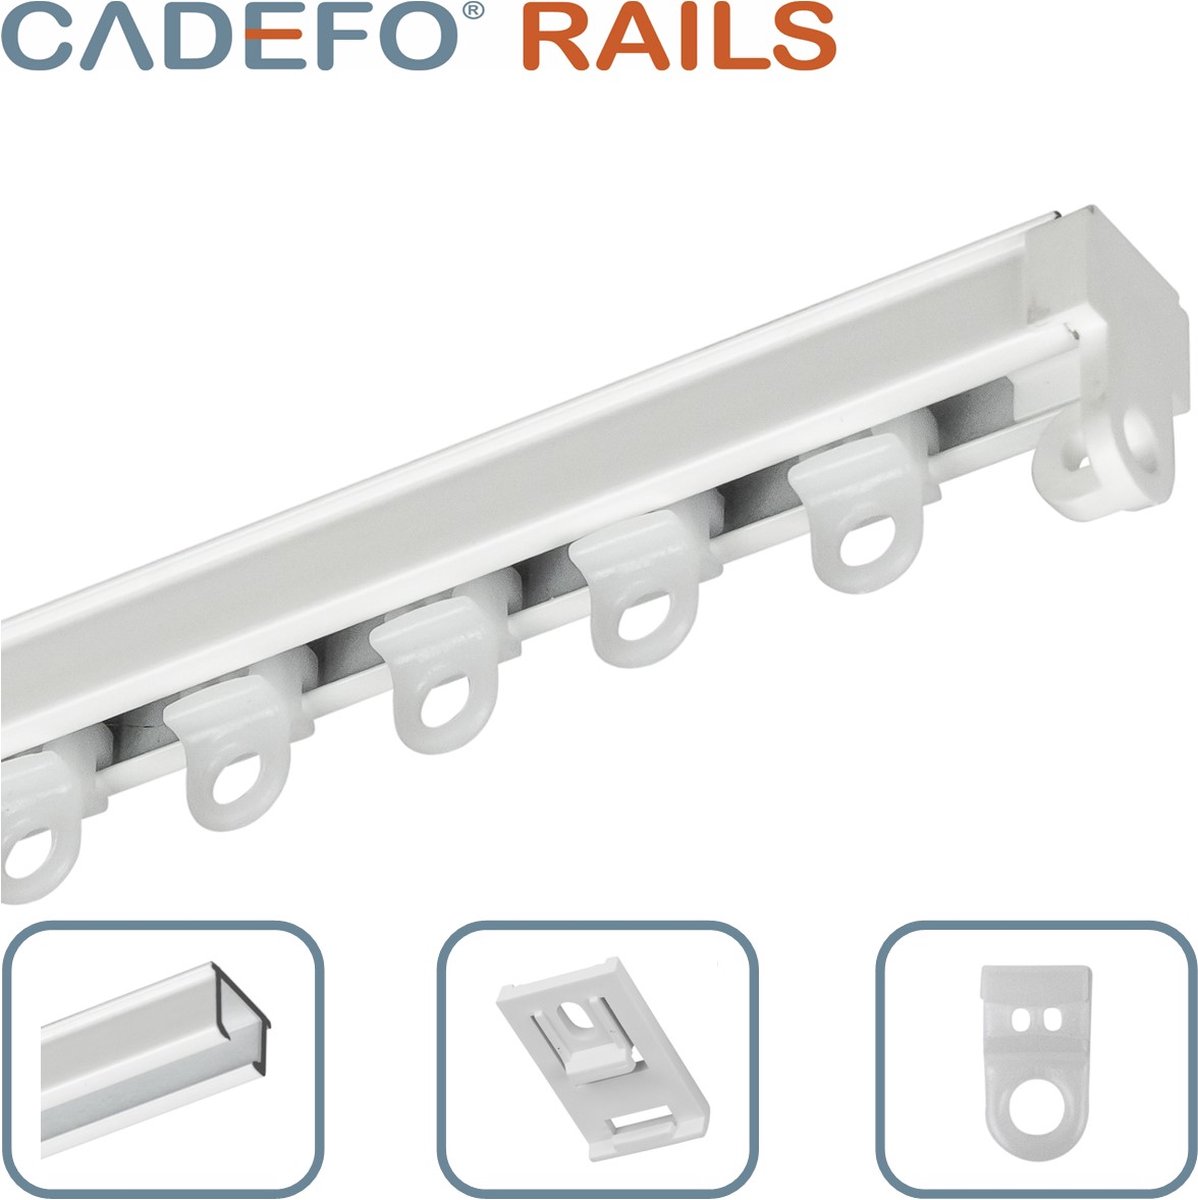 CADEFO RAILS (251 - 300 cm) Gordijnrails - Compleet op maat! - UIT 1 STUK - Leverbaar tot 6 meter - Plafondbevestiging - Lengte 280 cm